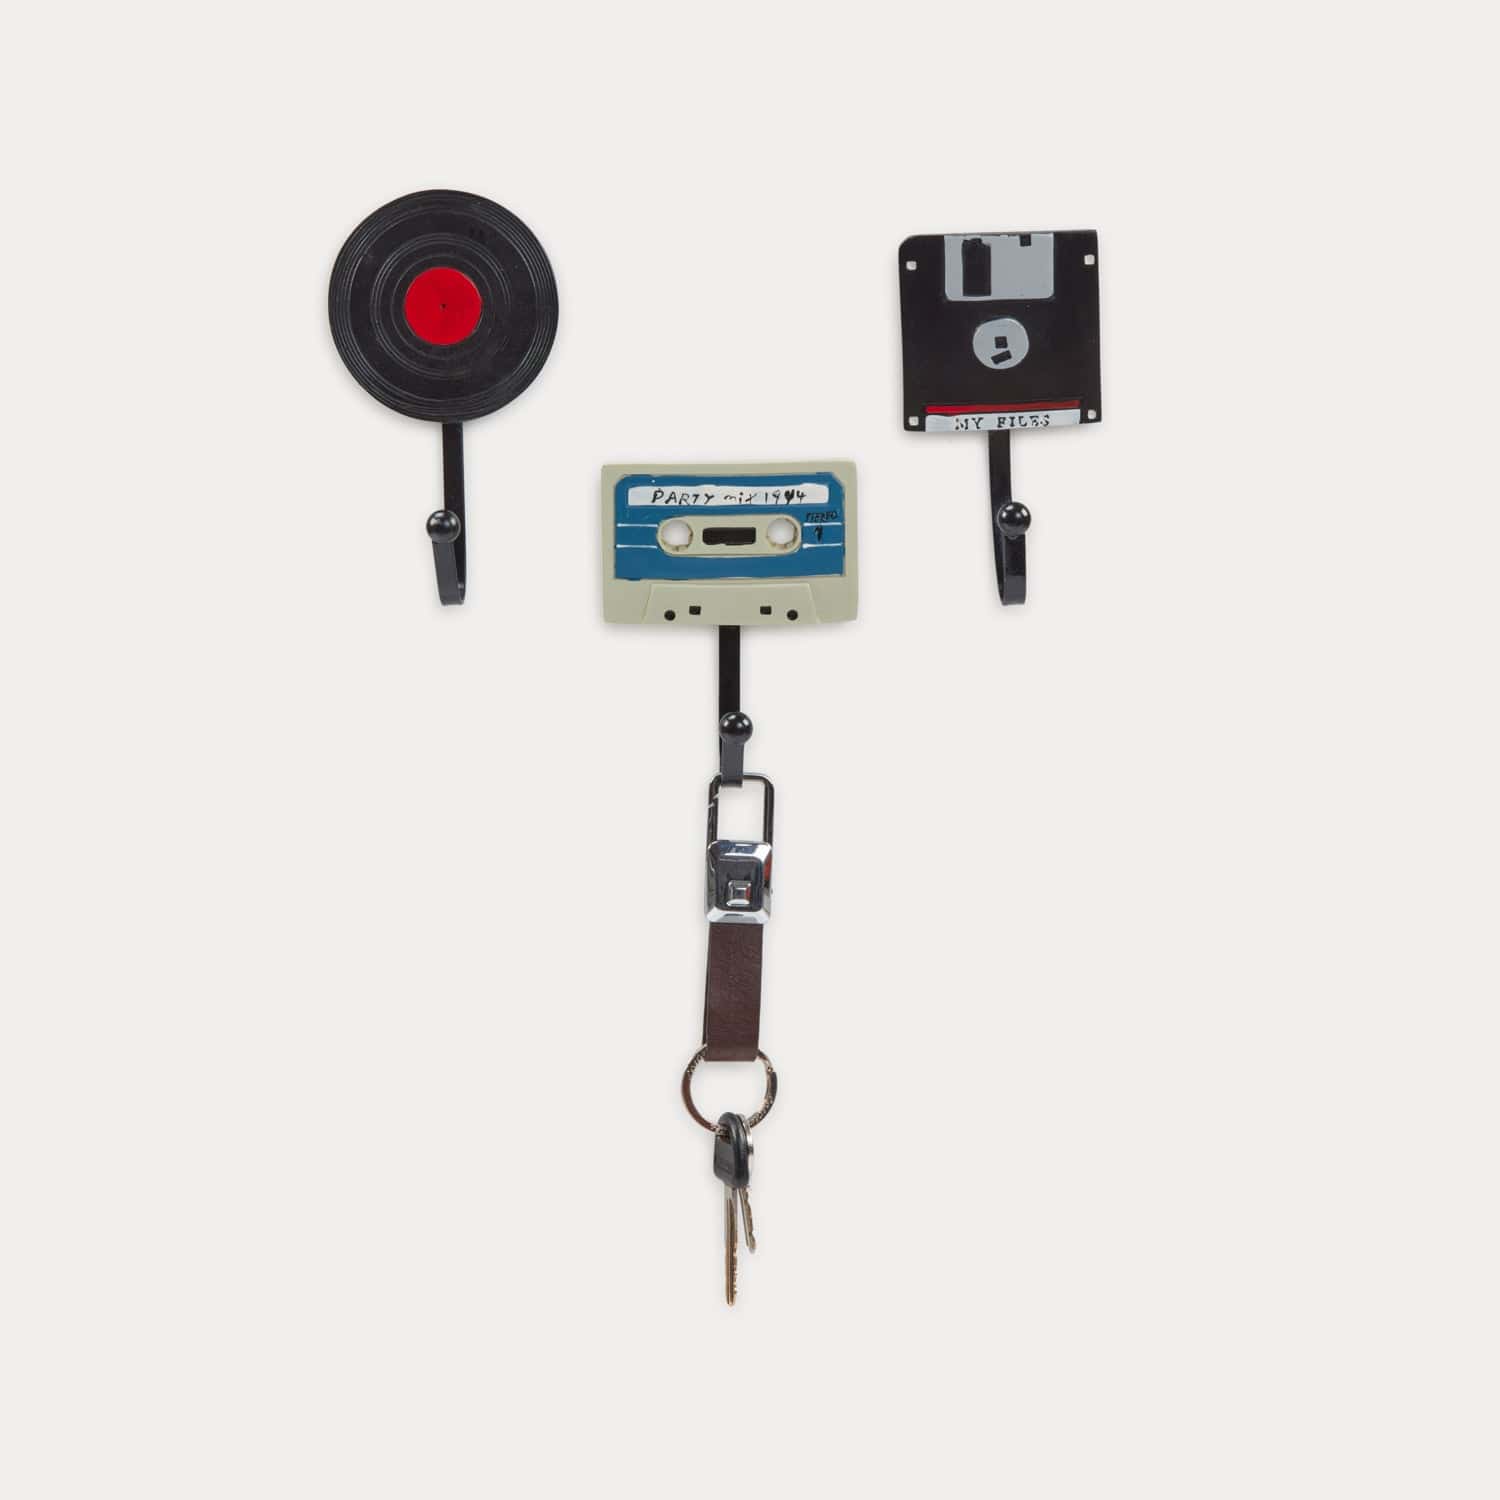 Red Butler Key Holder Key Holder - Old Storage KKH06A1 Retro Key Holder Set – Vintage Charm for Secure Key Storage Redbutler